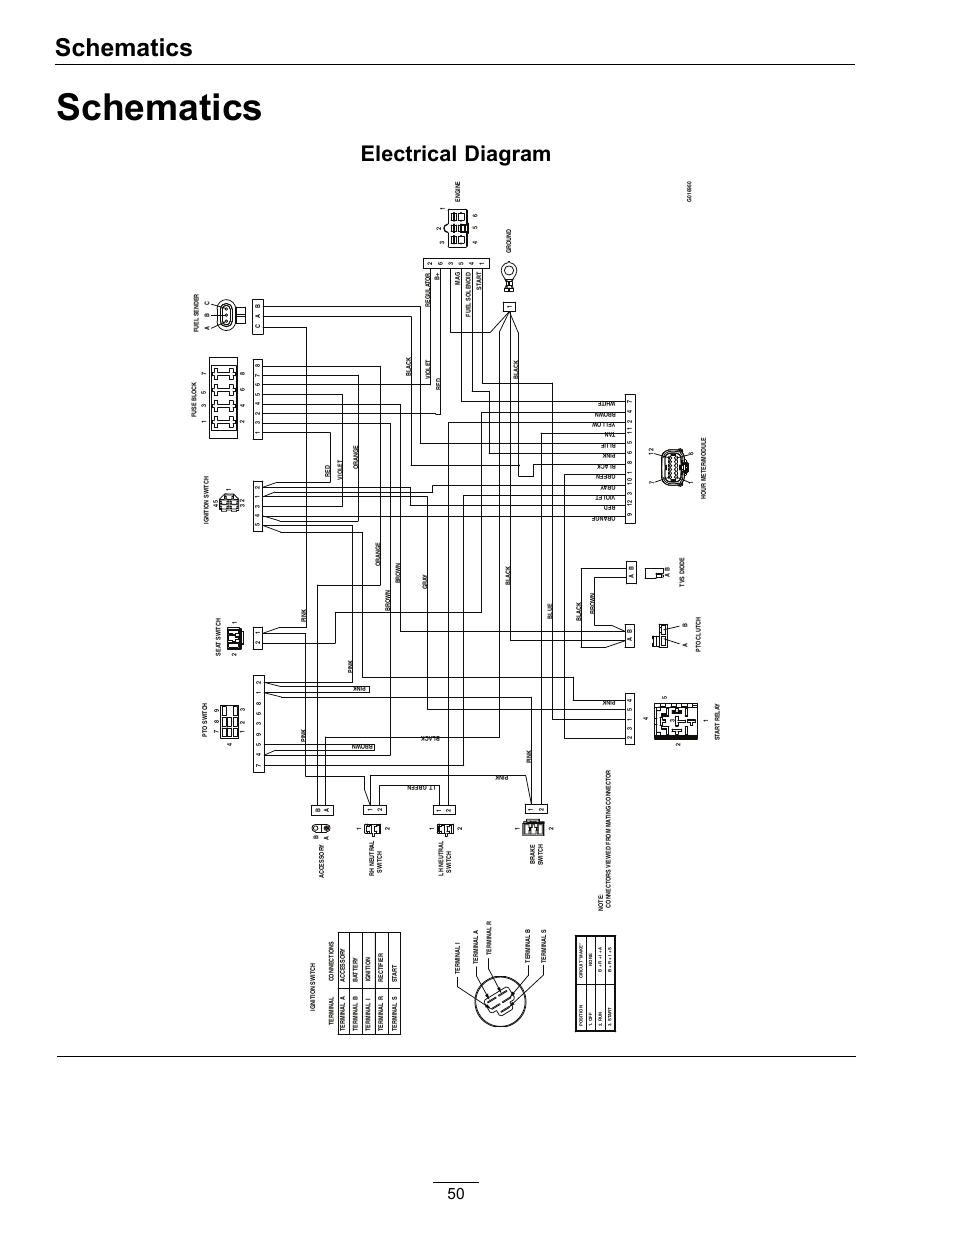 nuance speaker wiring diagram